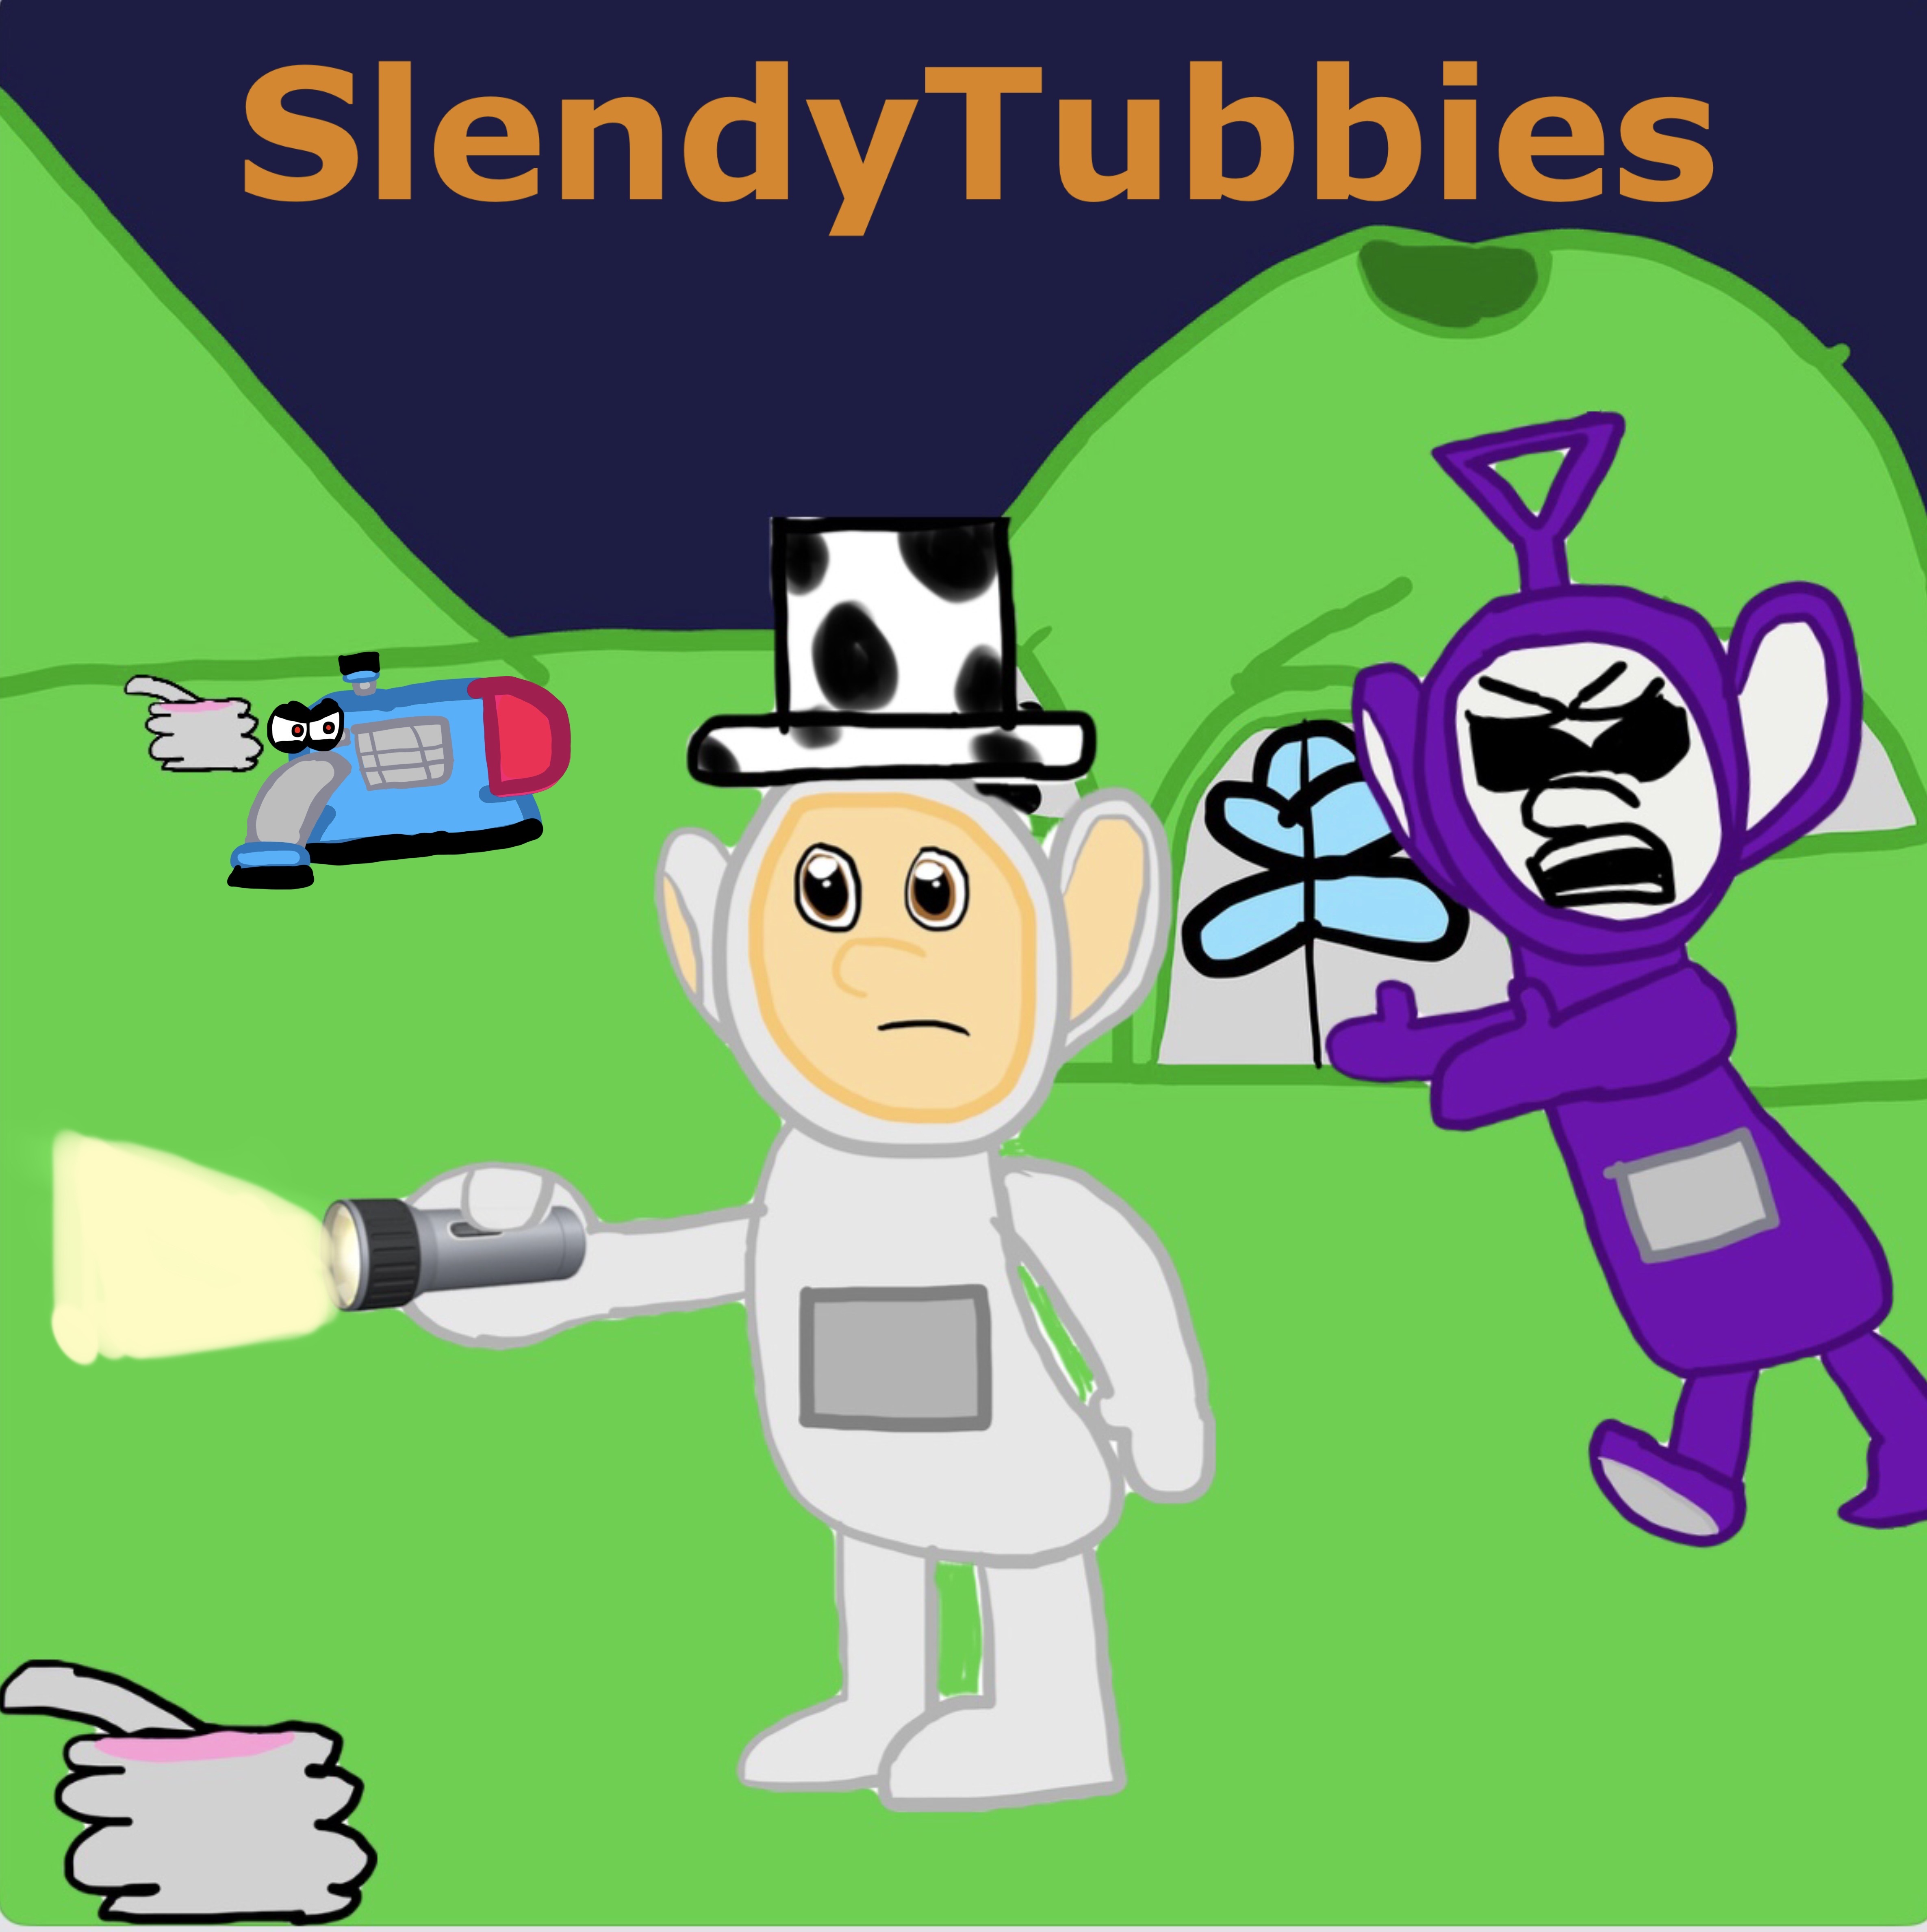 Slendytubbies 3 - Campaign - Part 1 